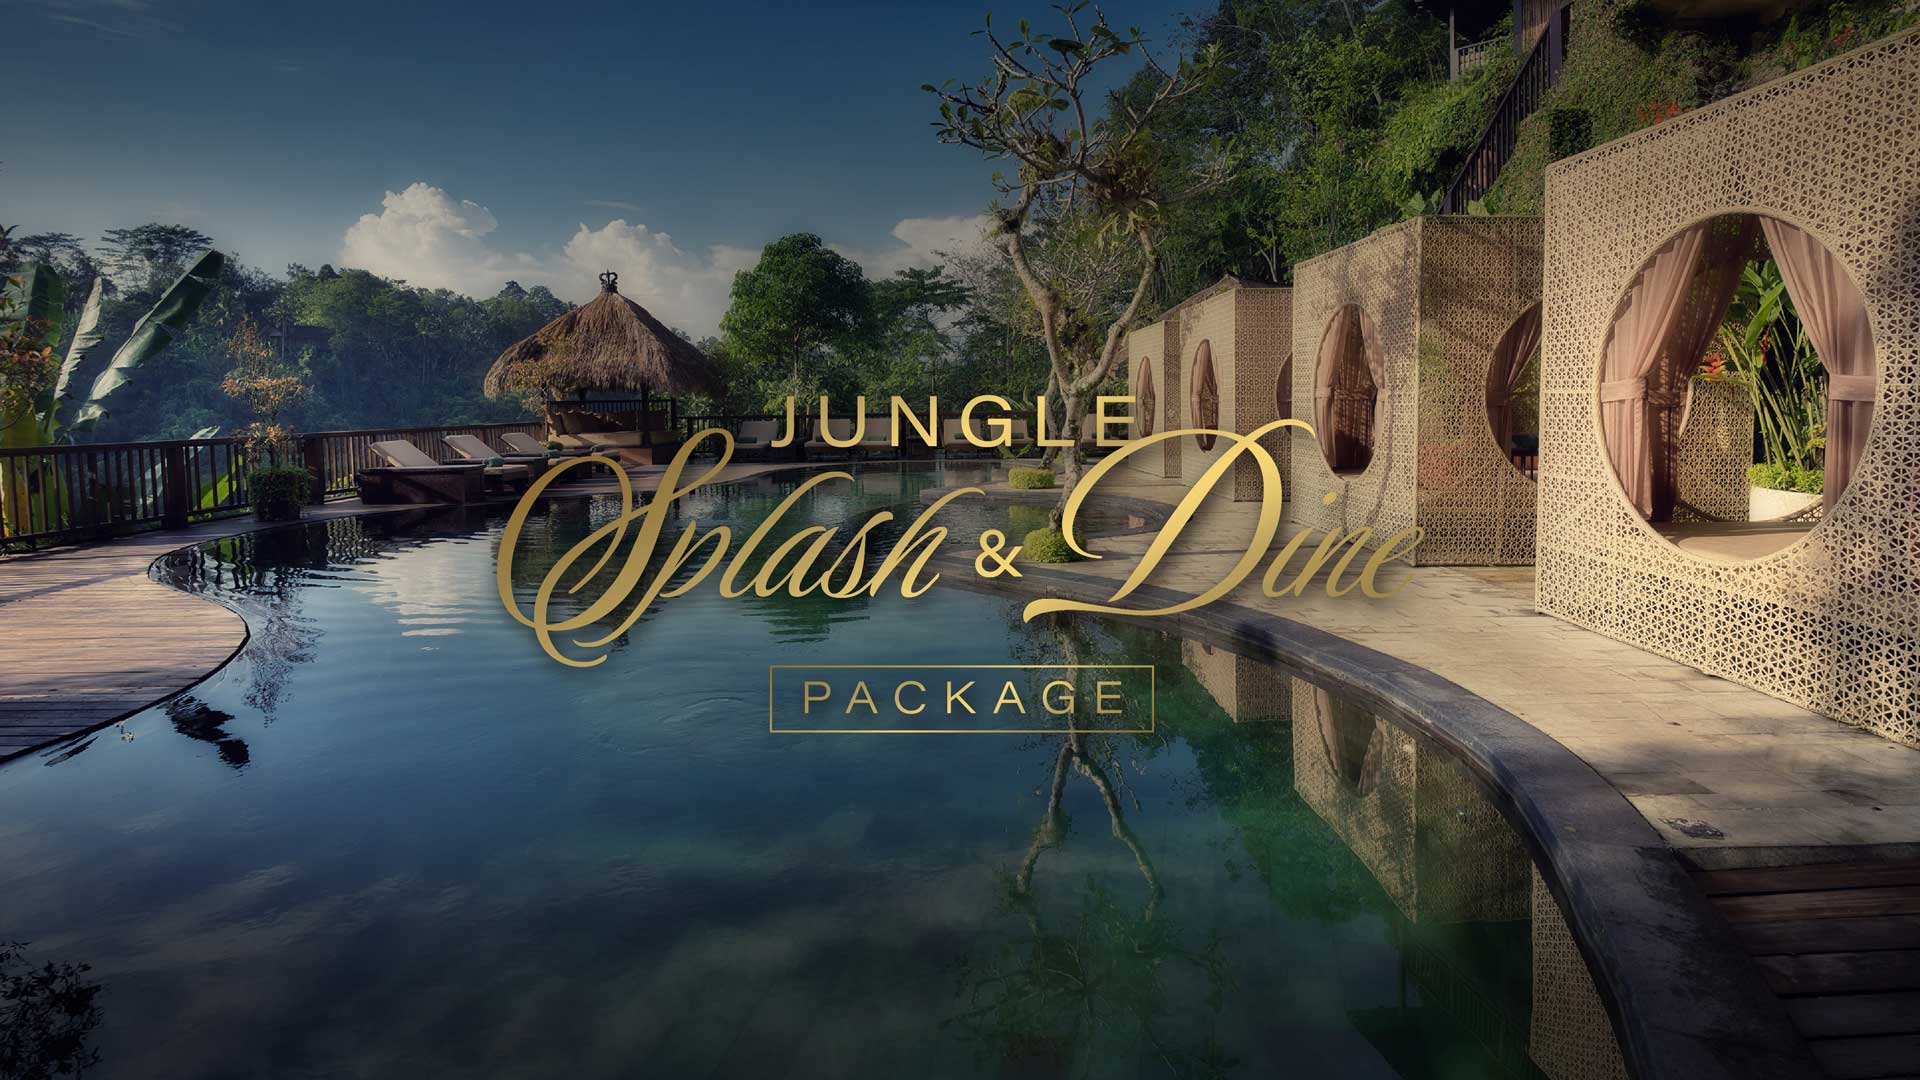 Offers - Jungle Splash & Dine